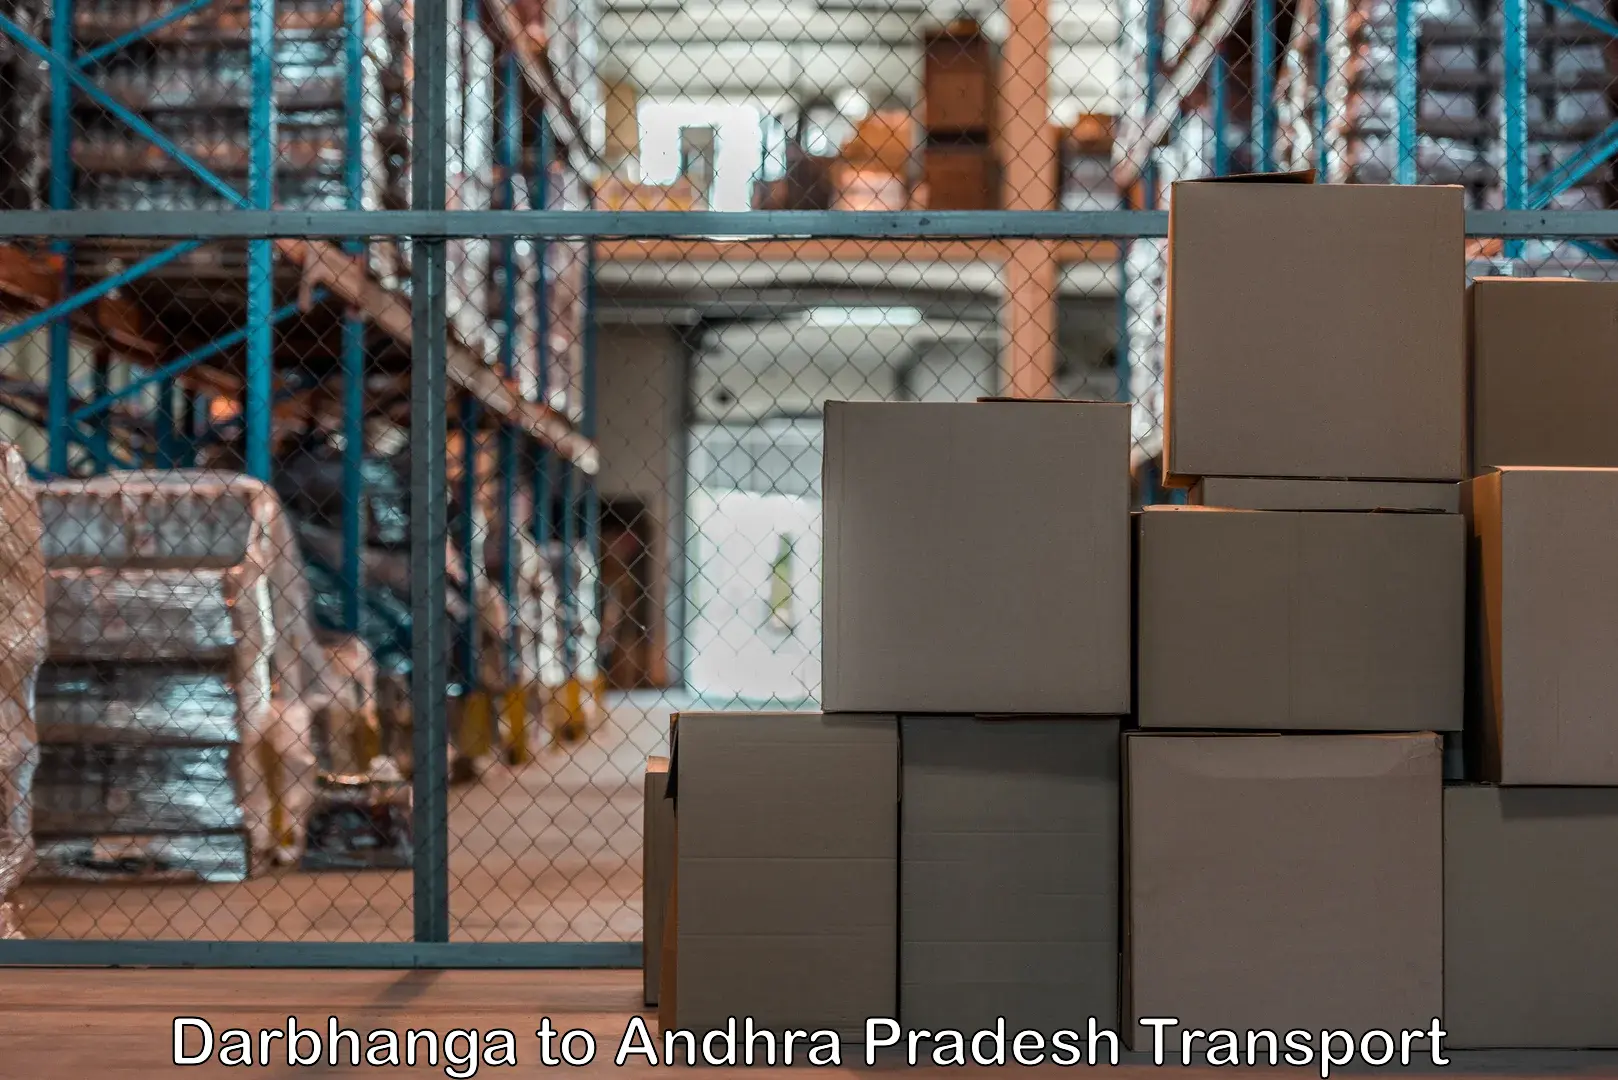 Shipping partner Darbhanga to Ichchapuram